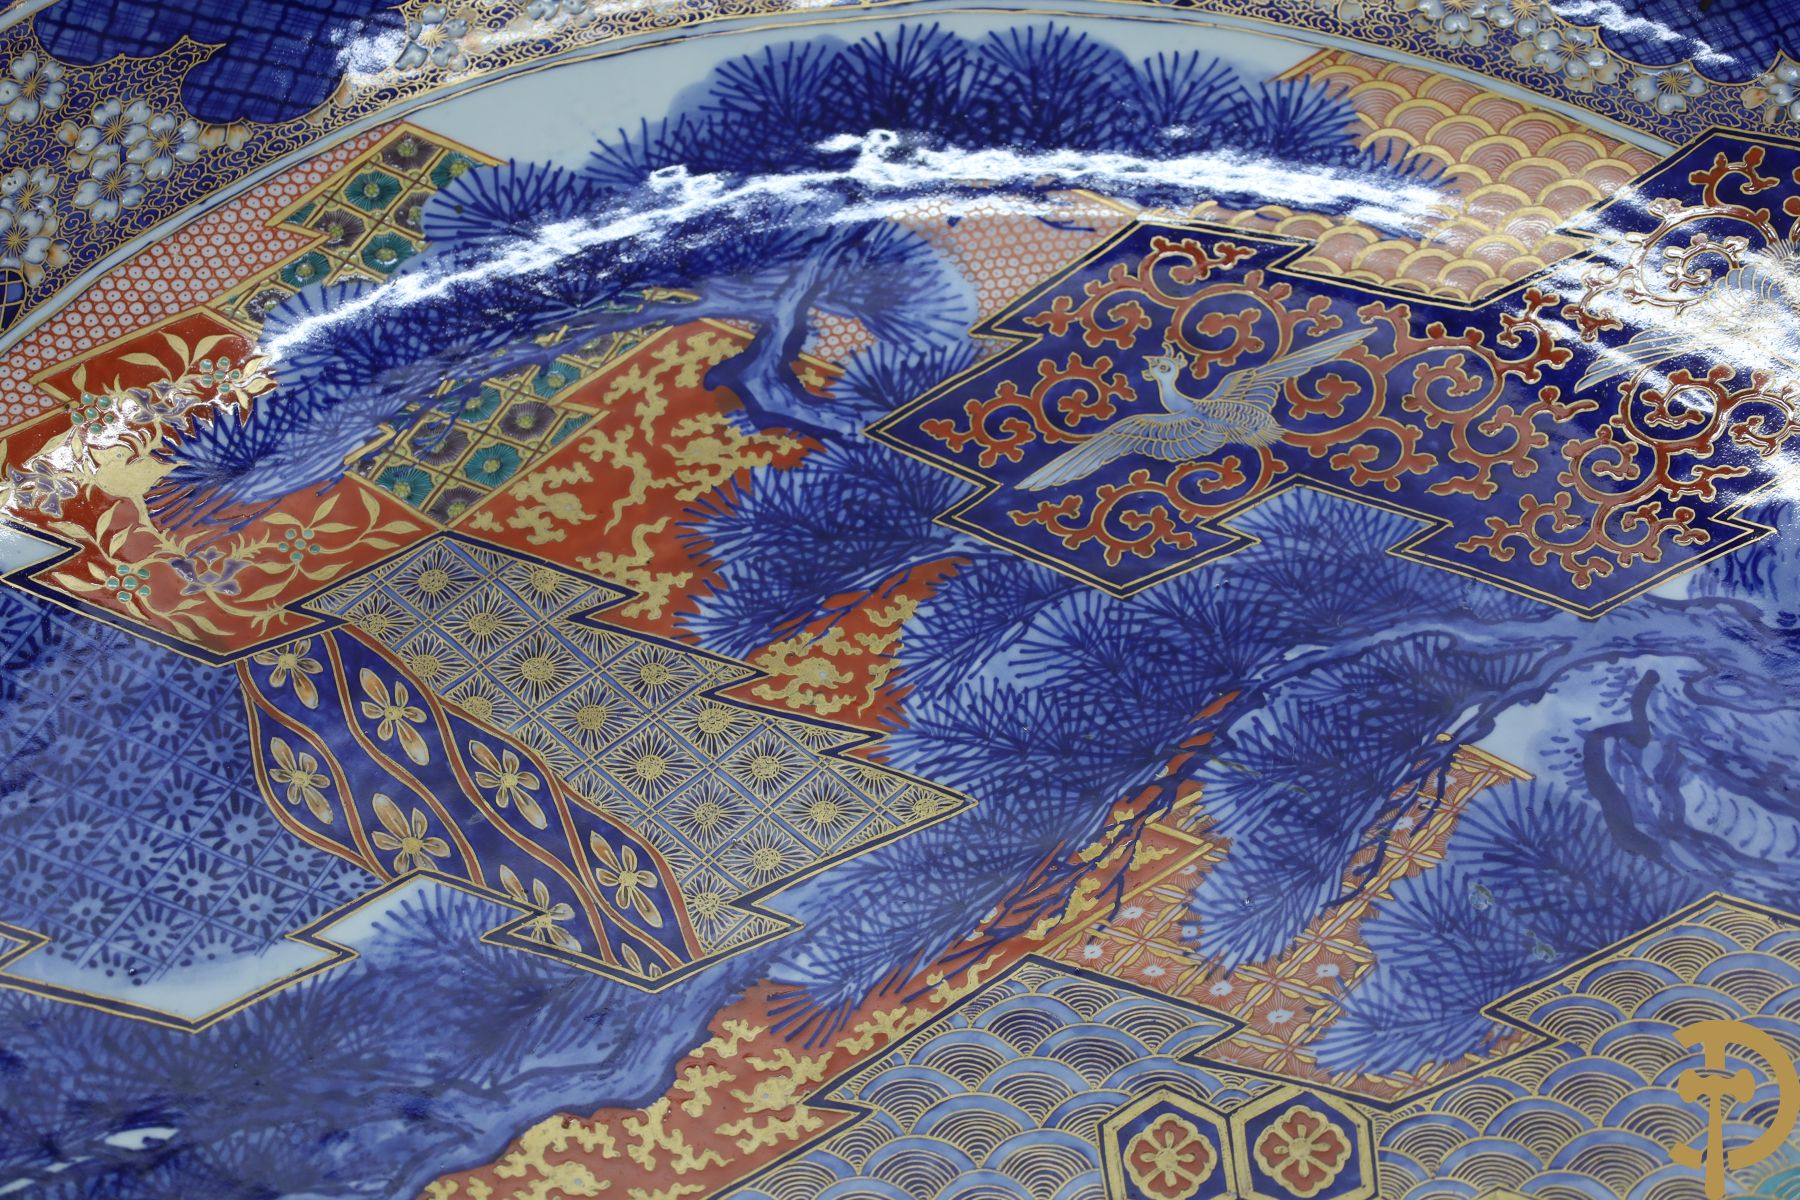 Zeer grote Japanse porseleinen Imari schotel met bloemendecor